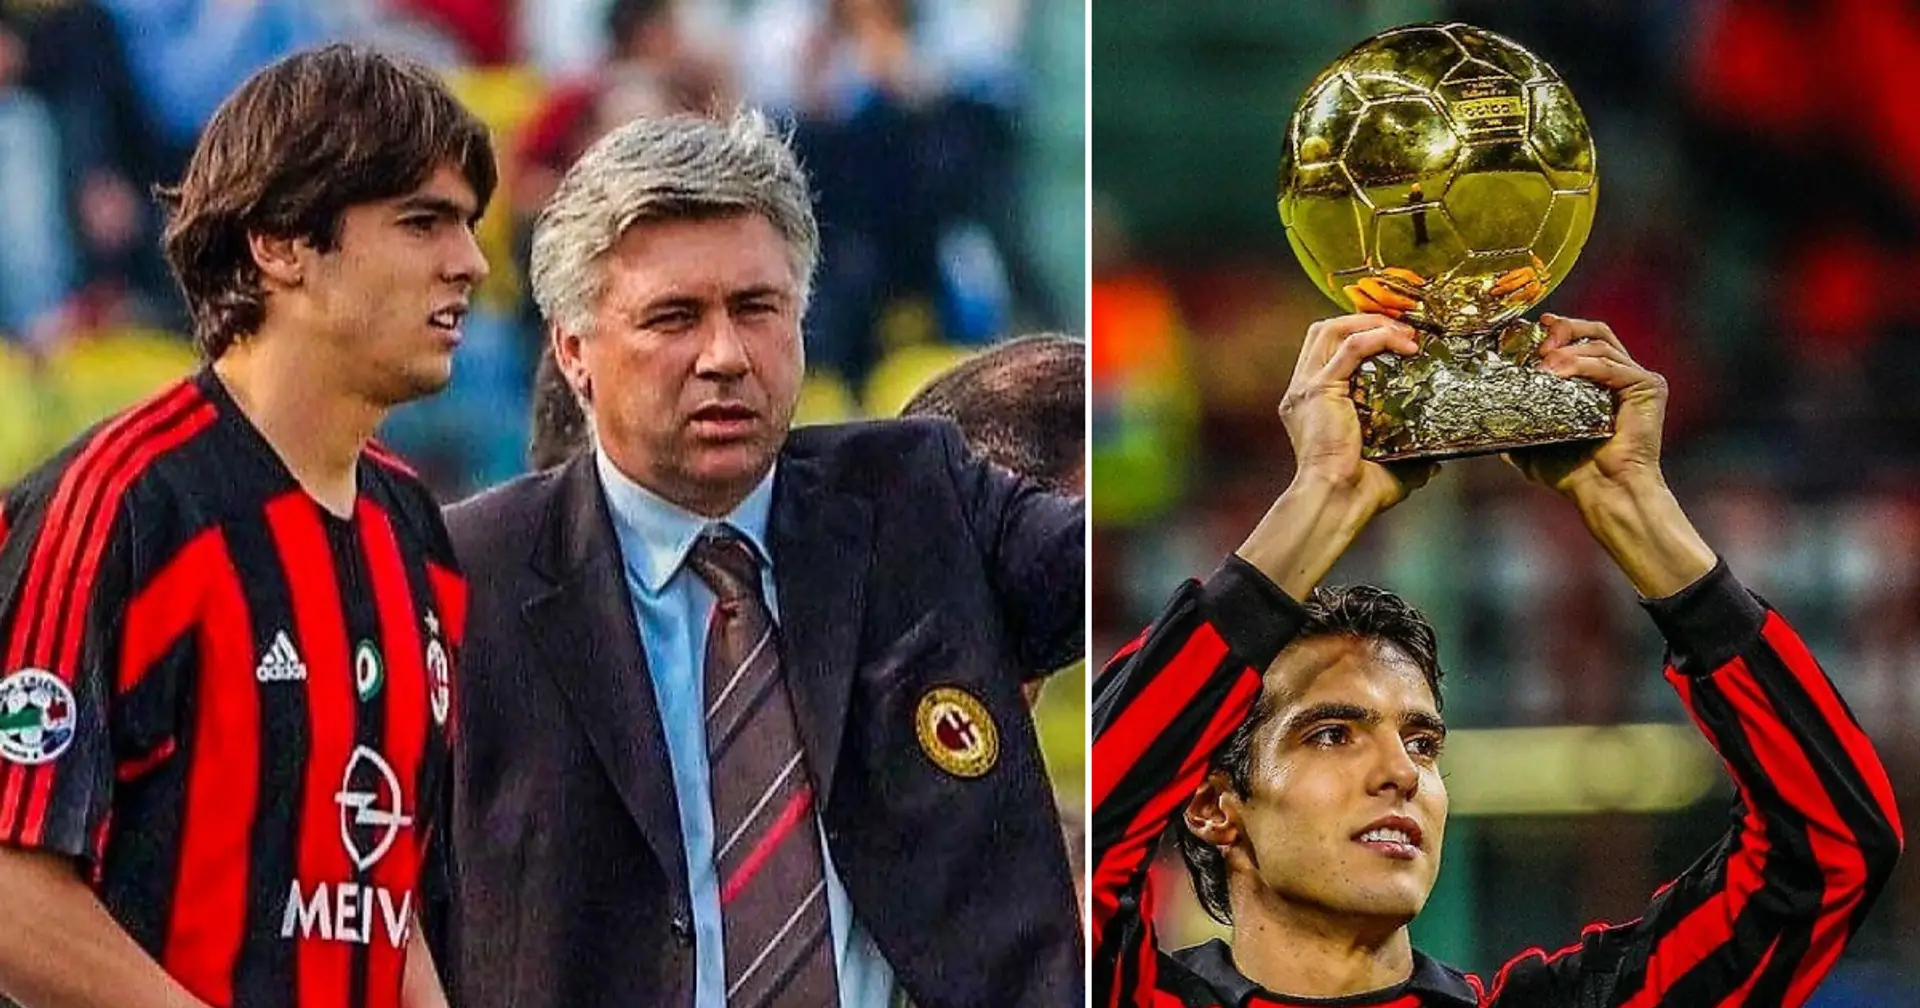 "Als Kaka aus dem Flugzeug stieg, sah er nicht wie ein Fußballer, sondern wie ein Student aus": Ancelotti sprach darüber, wie der Brasilianer mit Mailand zurechtkam